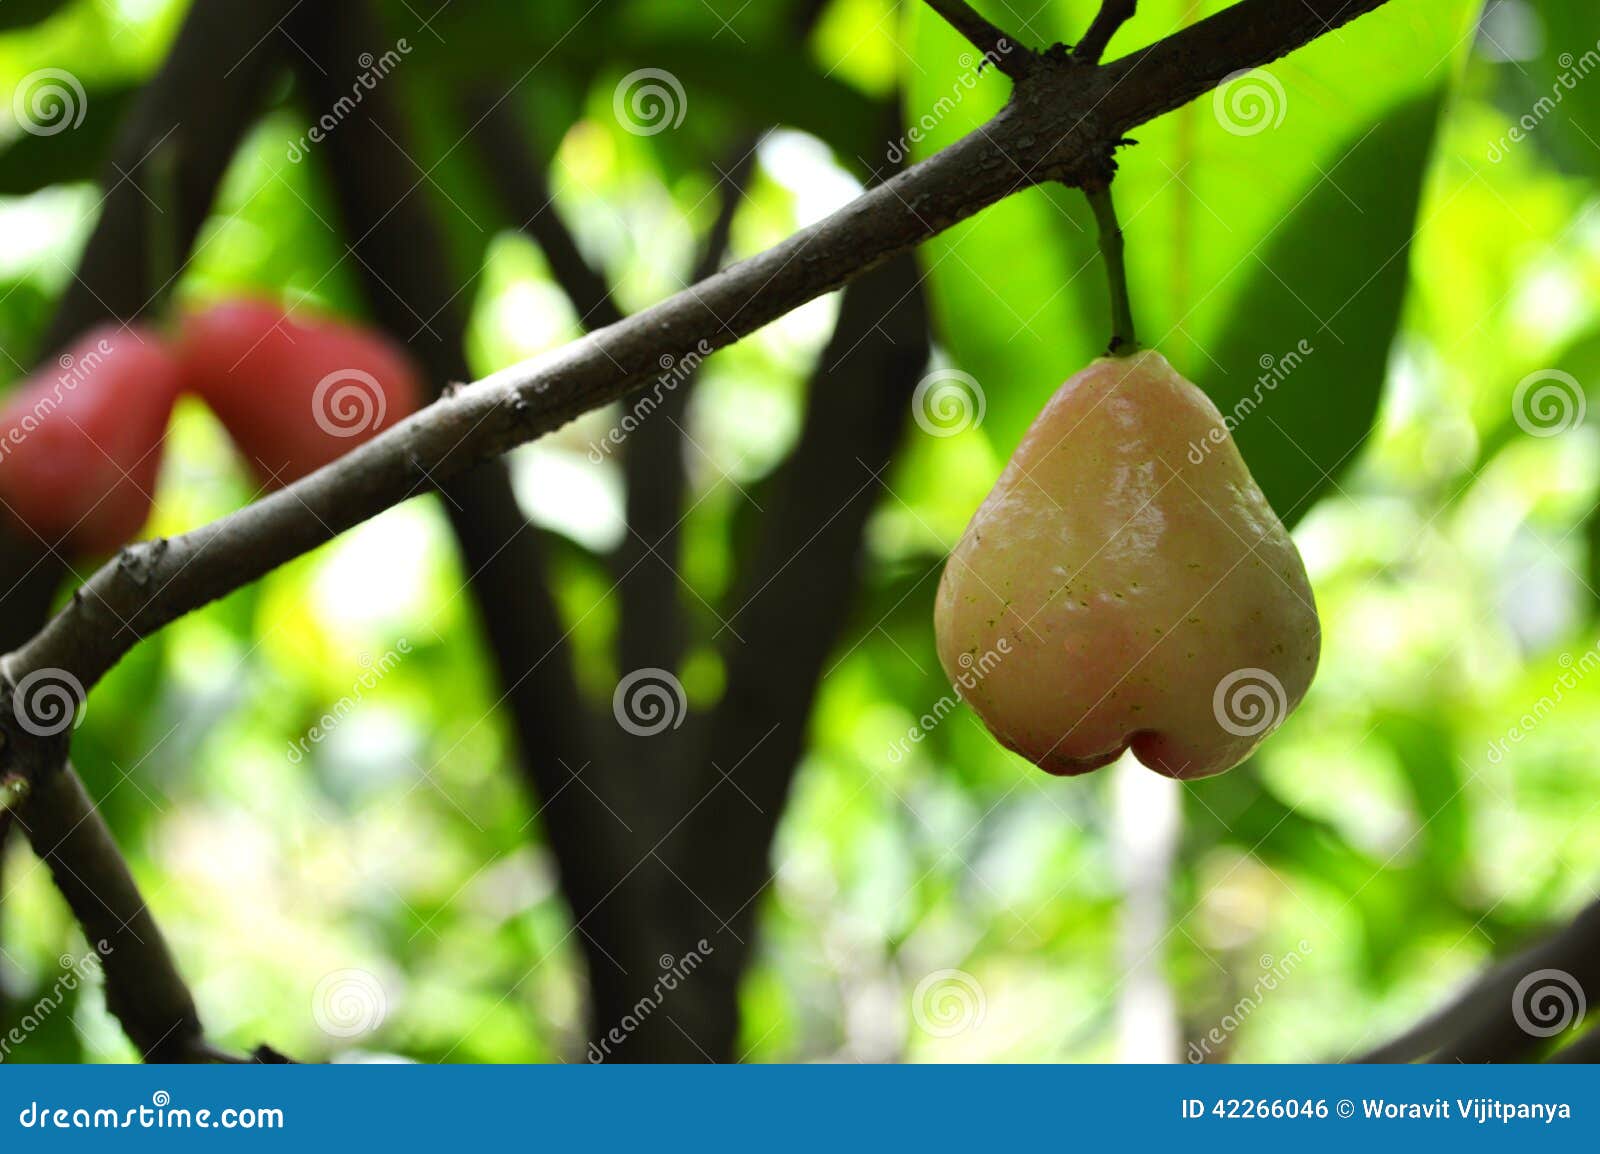 蒲桃非常高大的樹木，蒲桃是桃金孃科的常綠喬木植物 - 頭條匯